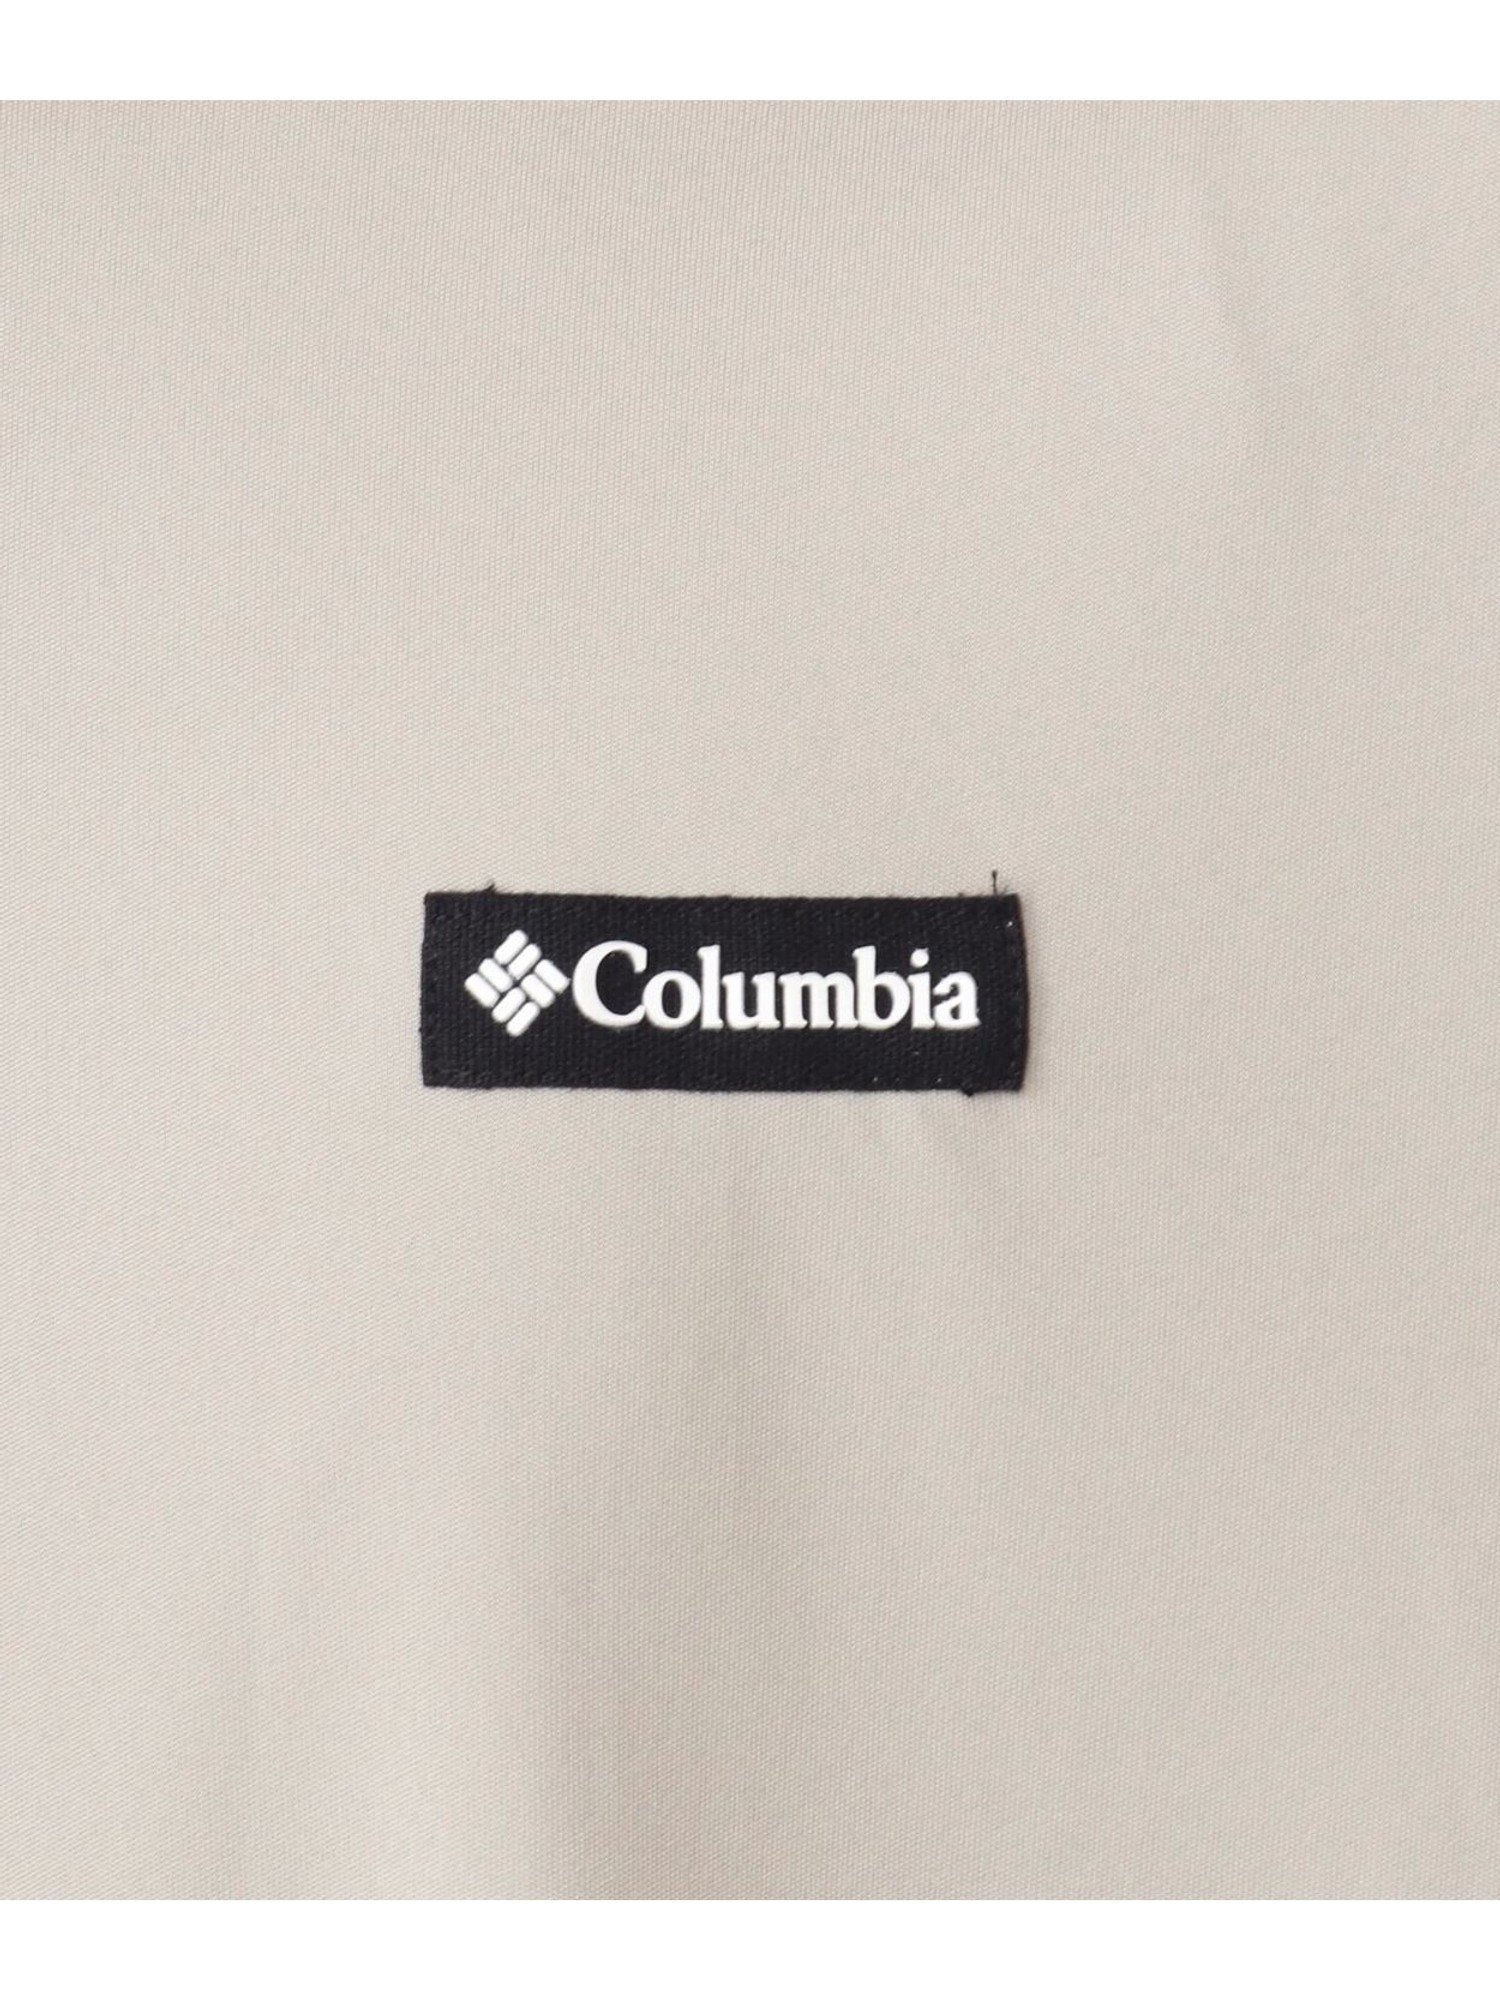 驚きの値段 NEW Columbia コロンビア メンズ レイクアローヘッド ショートスリーブ Tシャツ XM9614 347 